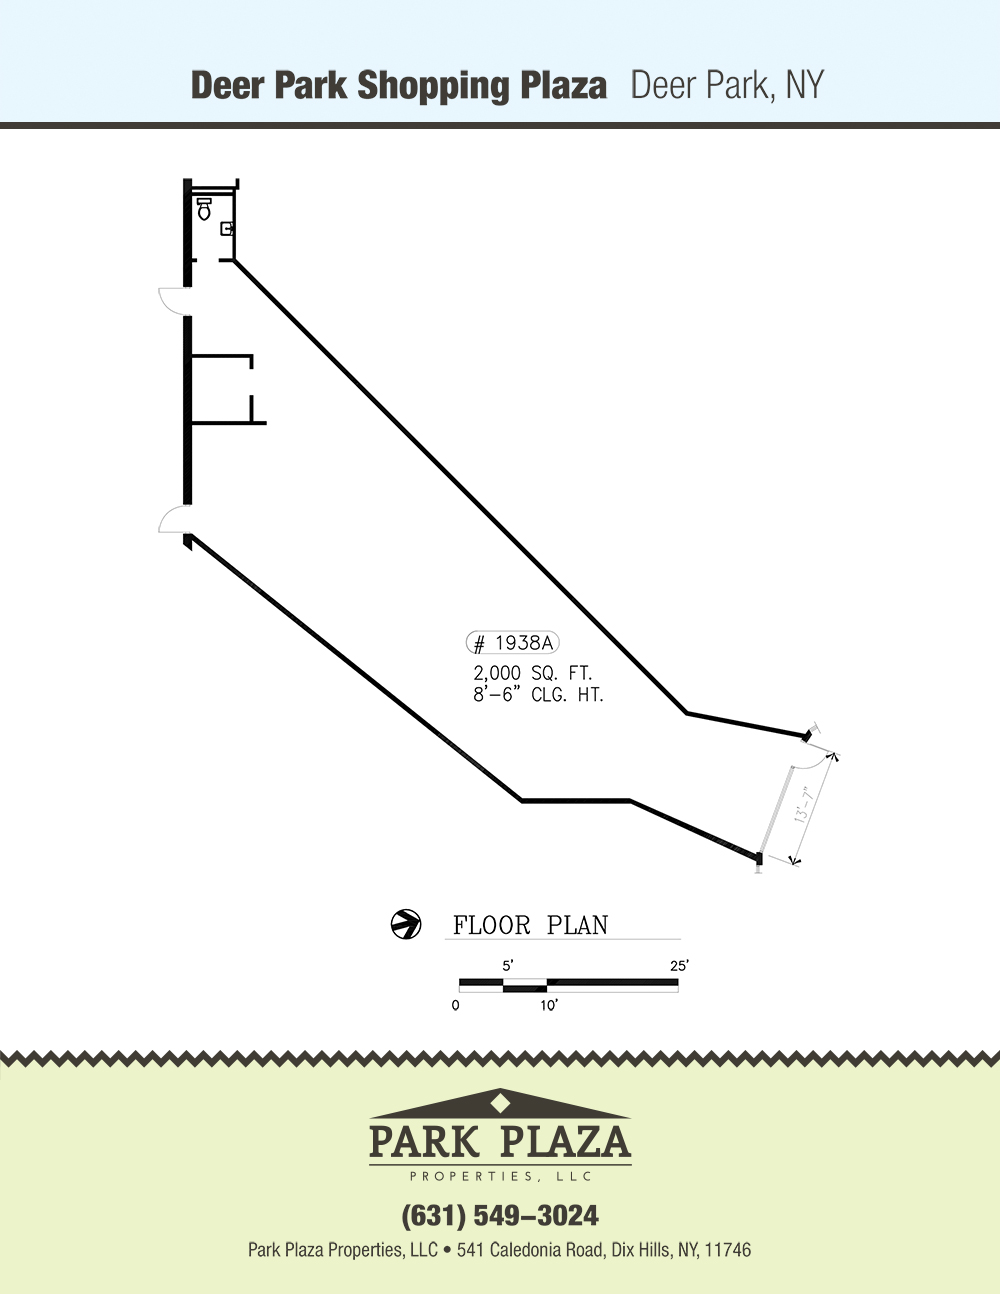 DeerPark 1938a Floor Plan Download